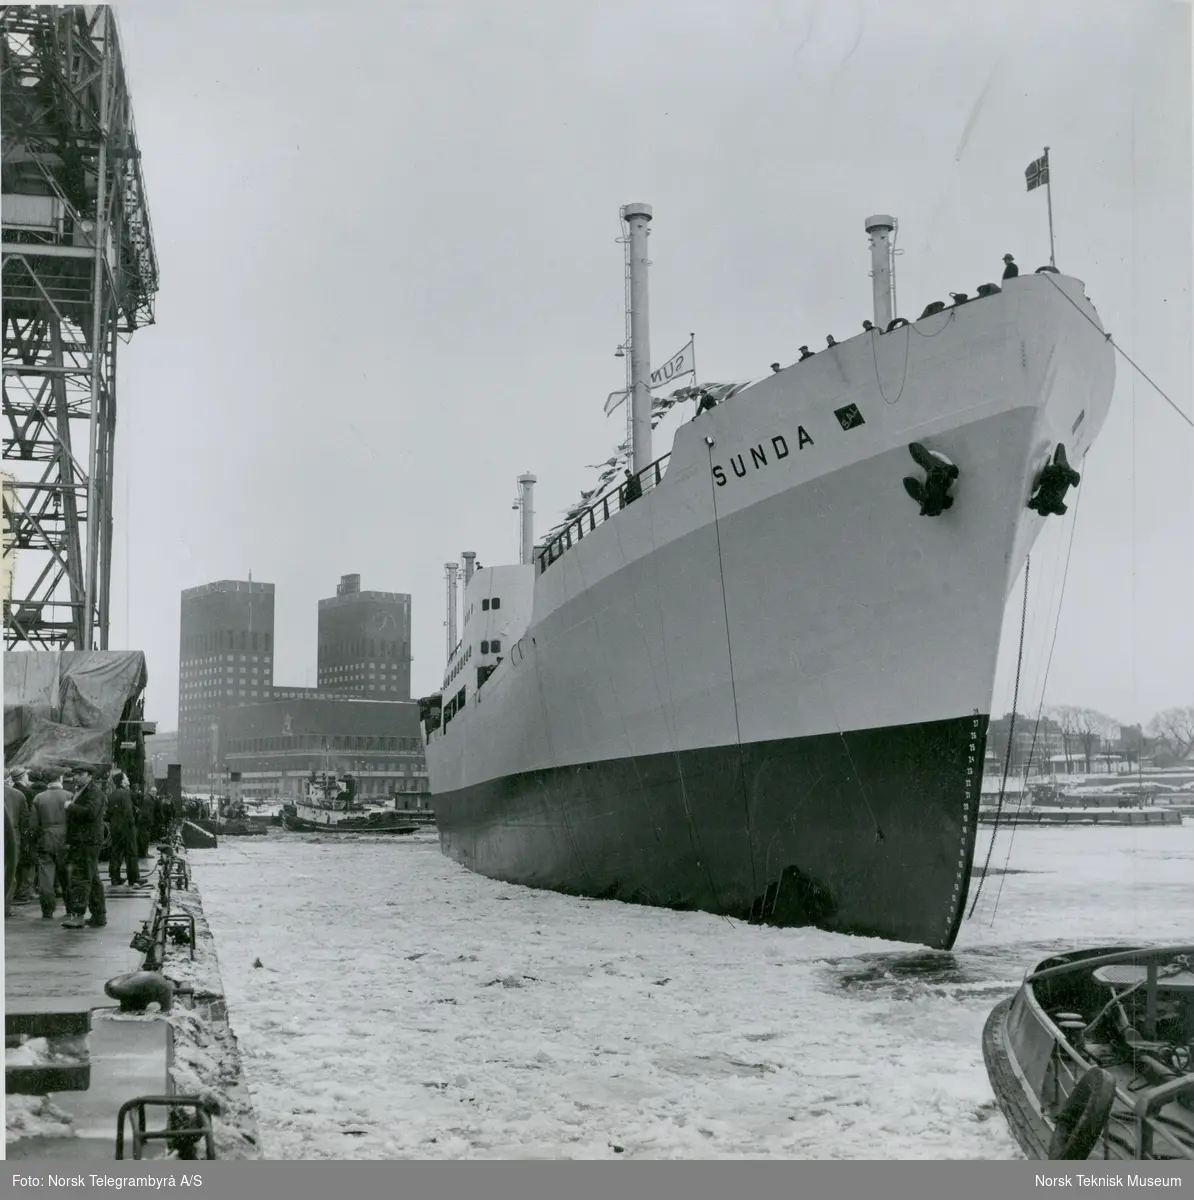 Cargolineren M/S Sunda, B/N 504 blir buksert til kai etter stabelavløpningen på Akers Mek. Verksted 25. mars 1954. Skipet ble levert i 1954 til J.L. Mowinckels rederi. Oslo Rådhus i bakgrunnen.